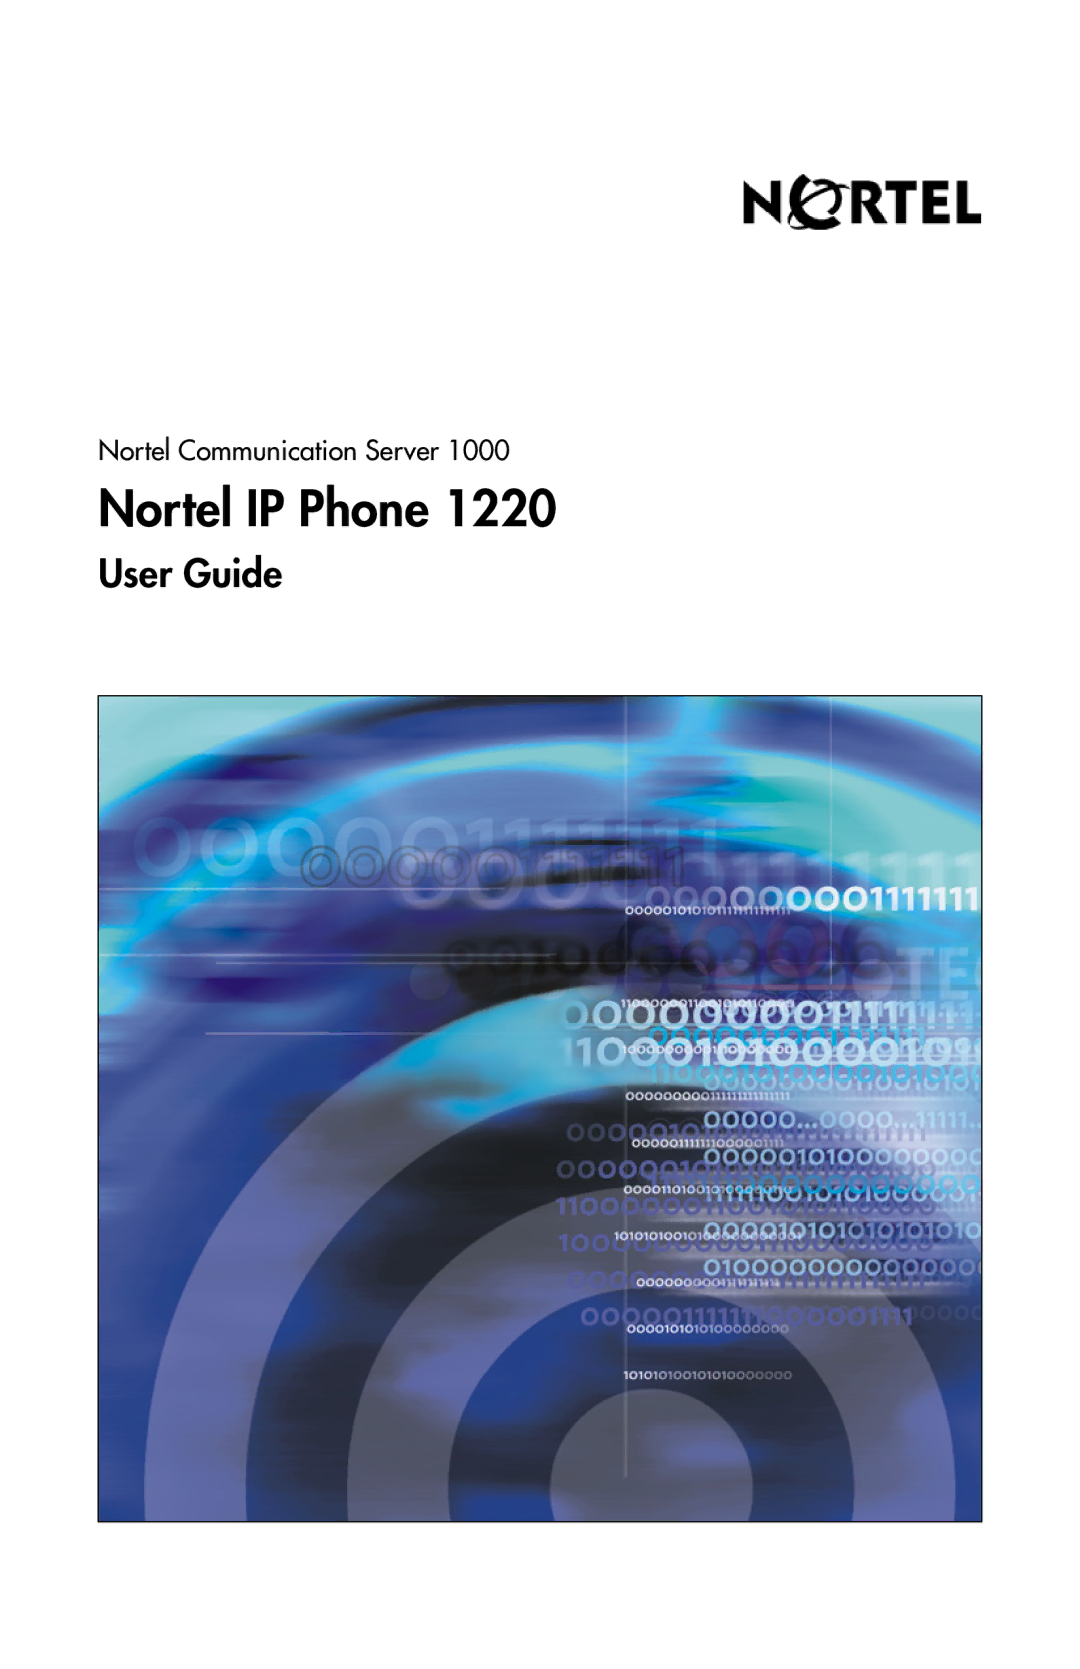 Nortel Networks IP Phone 1220 manual Nortel IP Phone 